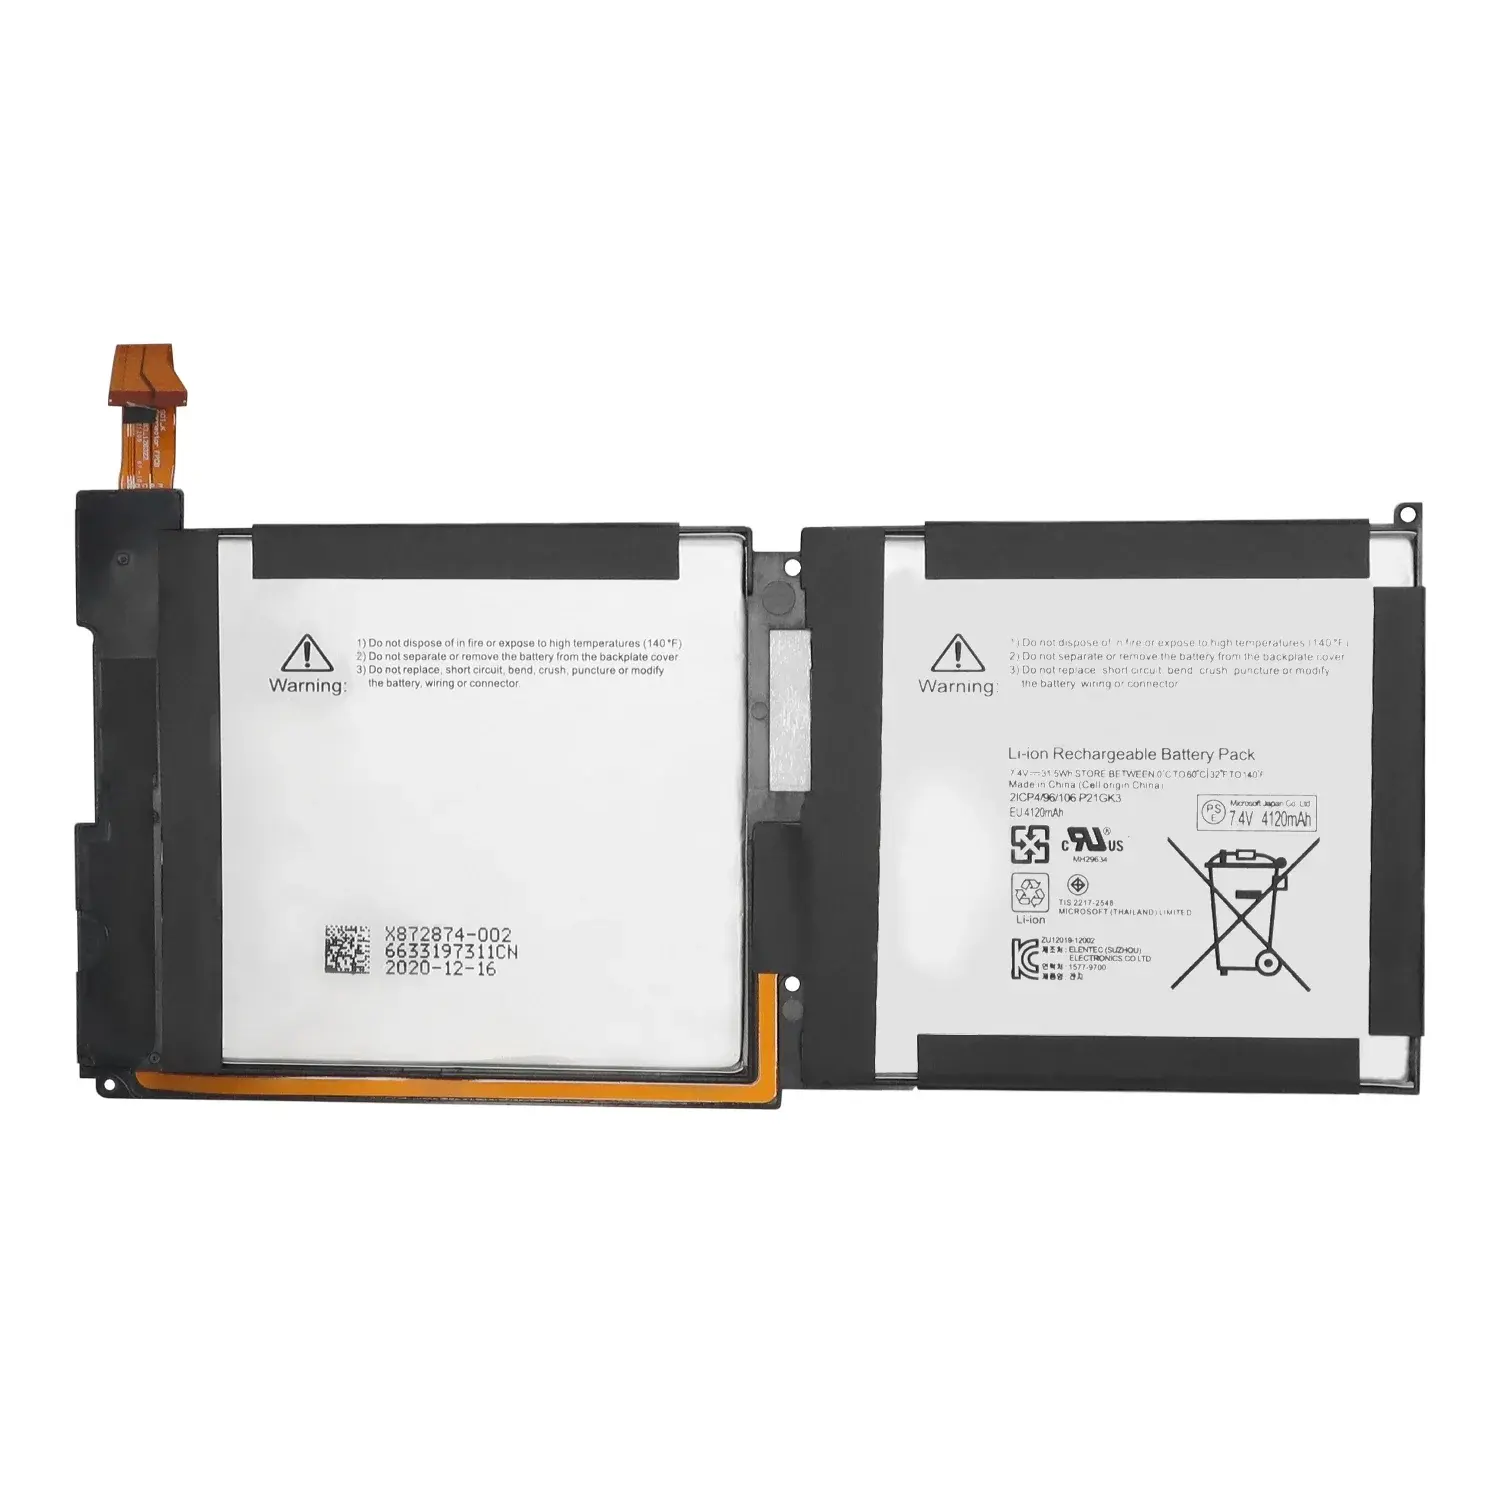 P21GK3 batteria di ricambio per Microsoft Surface RT RT1 modello 1516